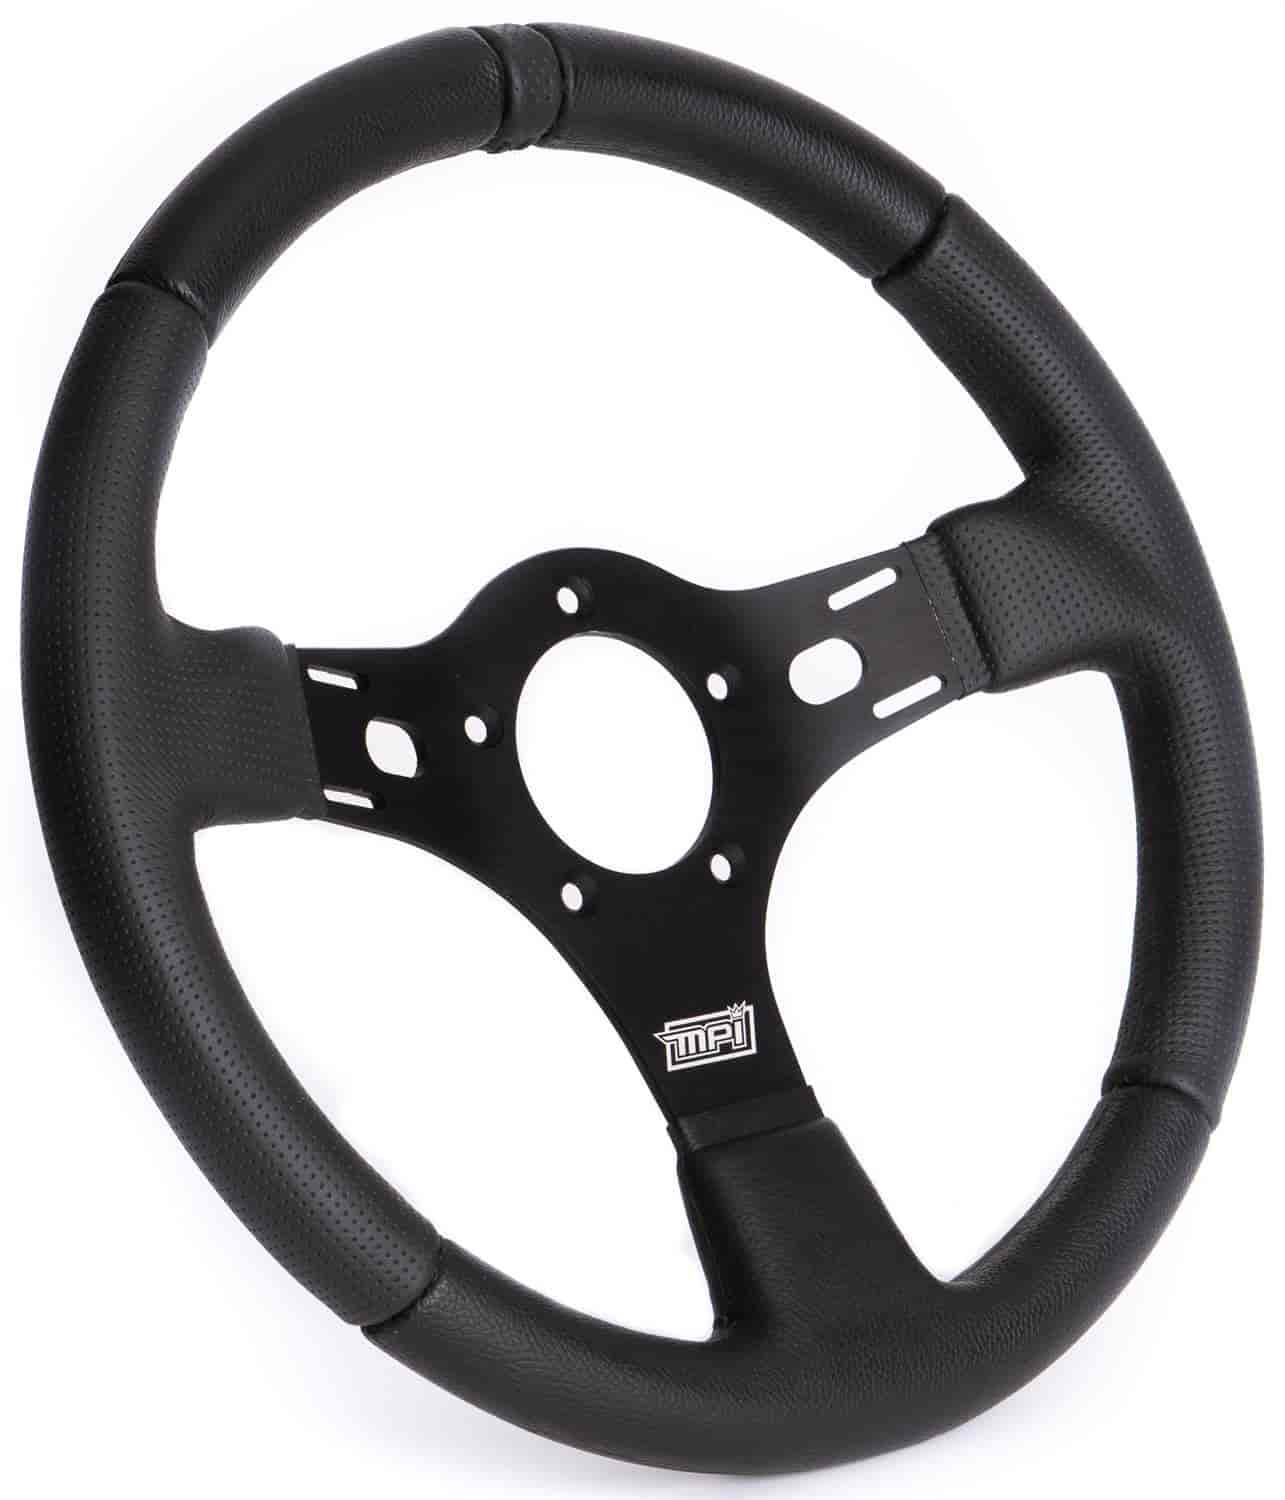 Drag Race Steering Wheel 13 in. Diameter, Black Center Marker